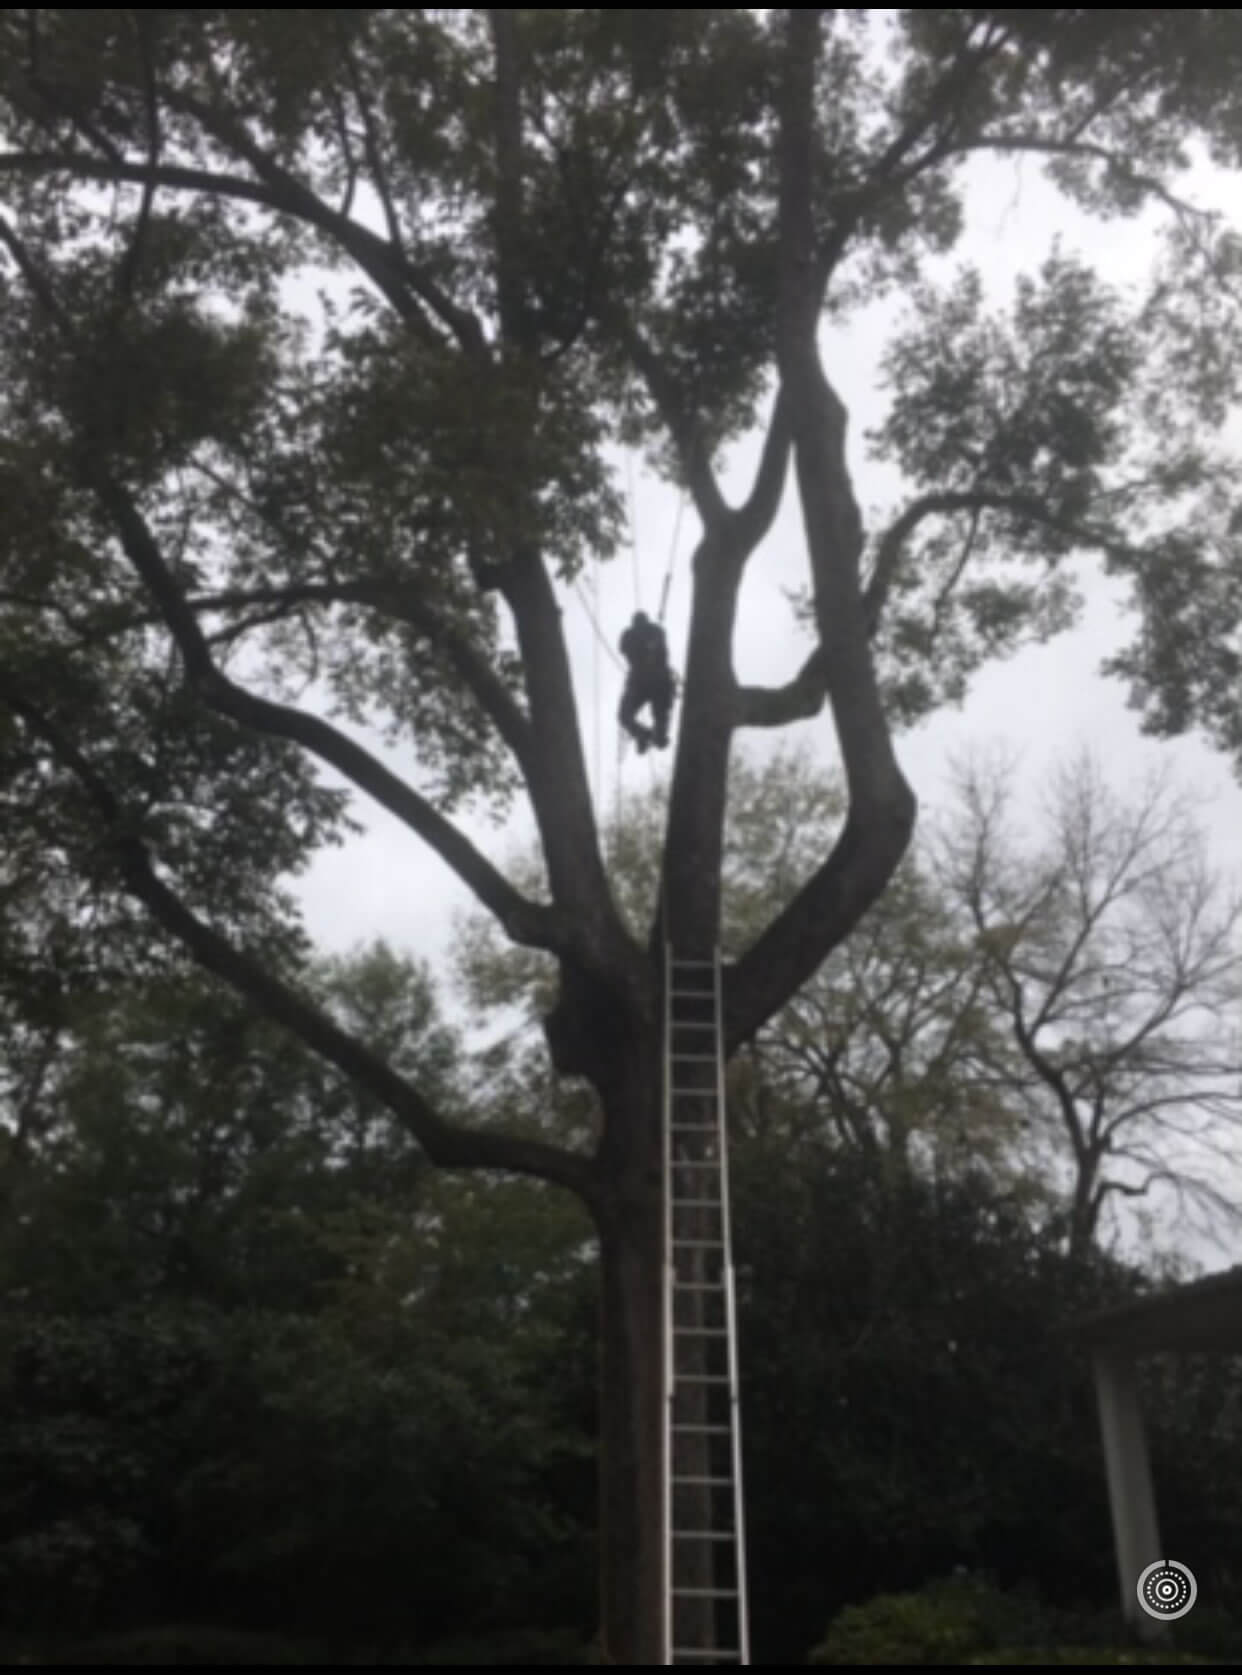 Installing Lightning Rod on Tree